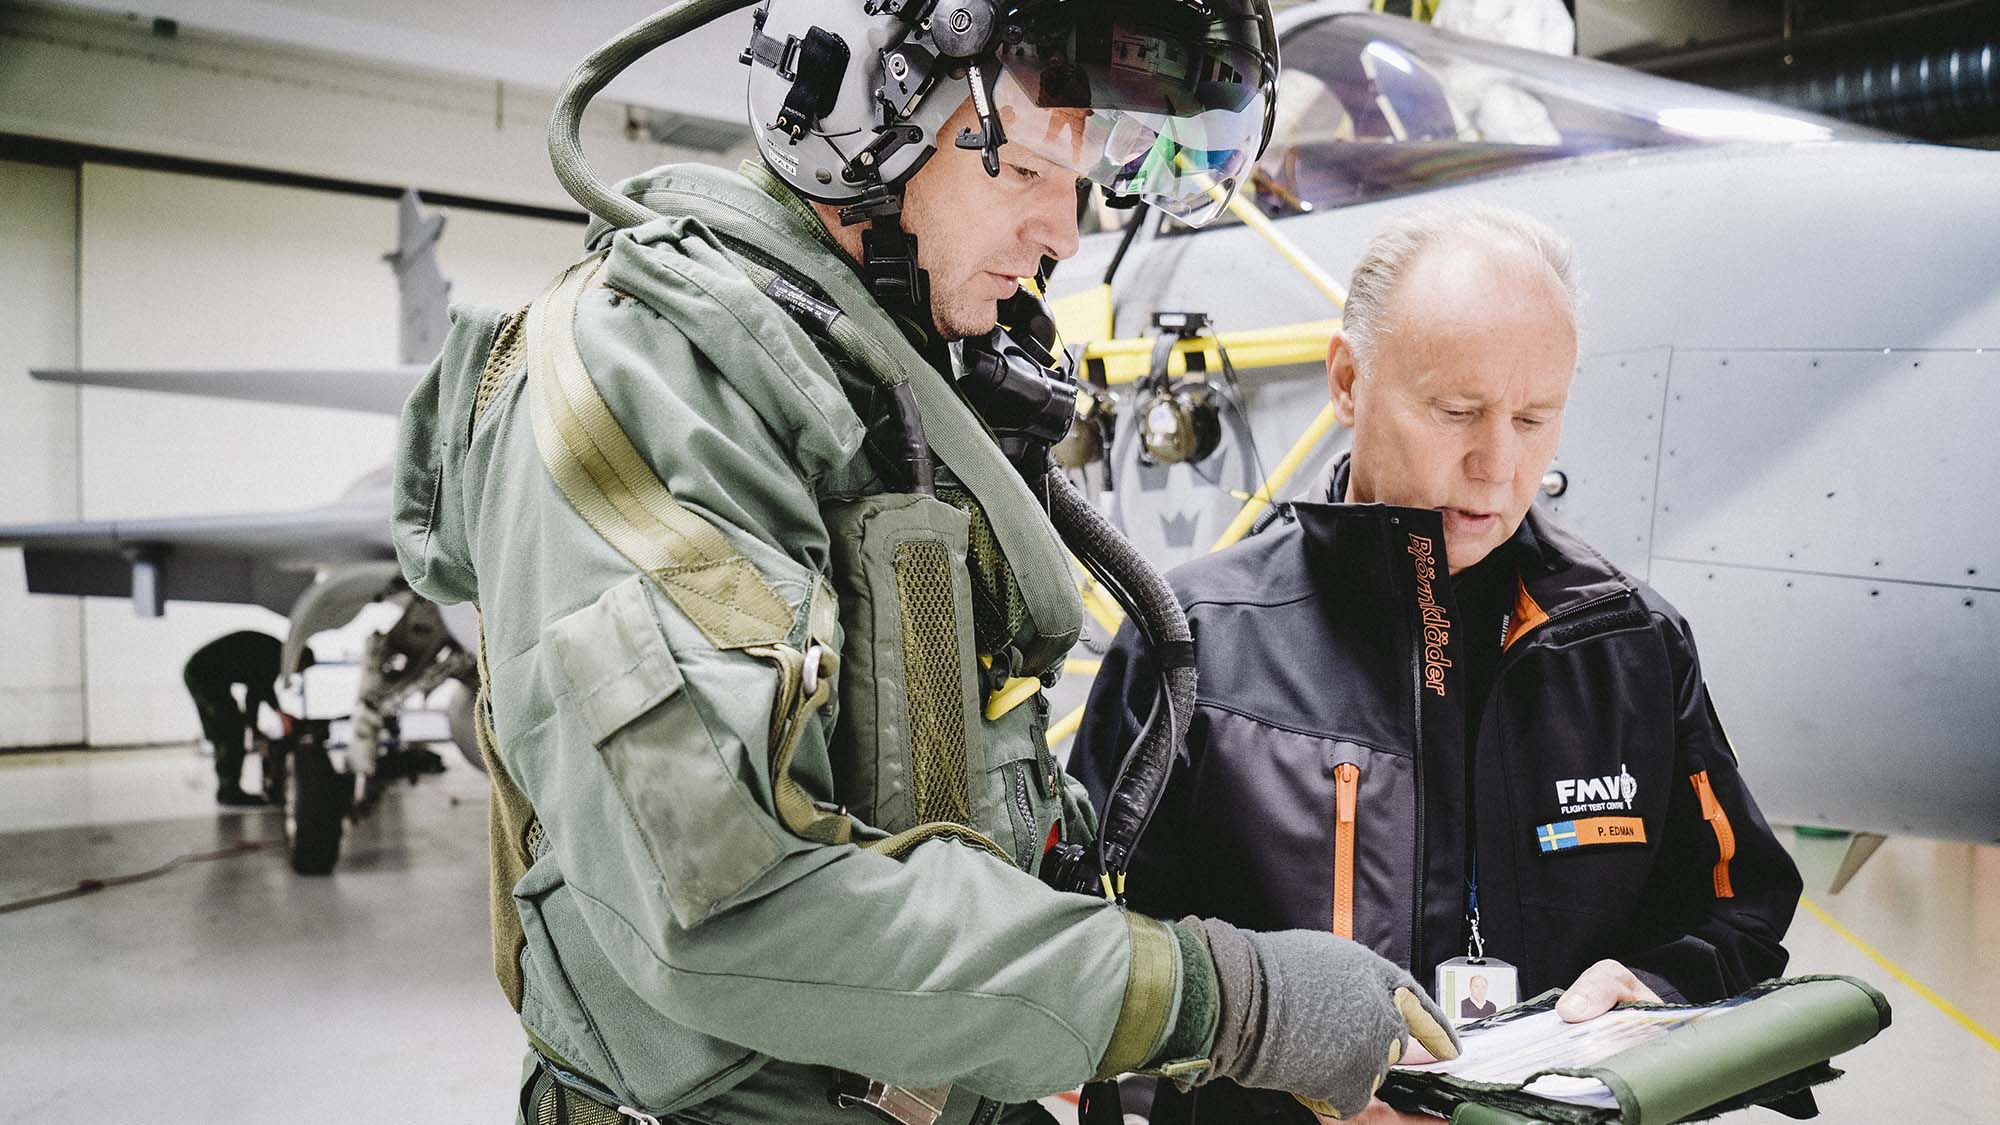 Provingenjören Peter Edman förbereder prov med pilotens säkerhetsmateriel. Proven genomförs vid FMV Test & evaluering i Linköping. 